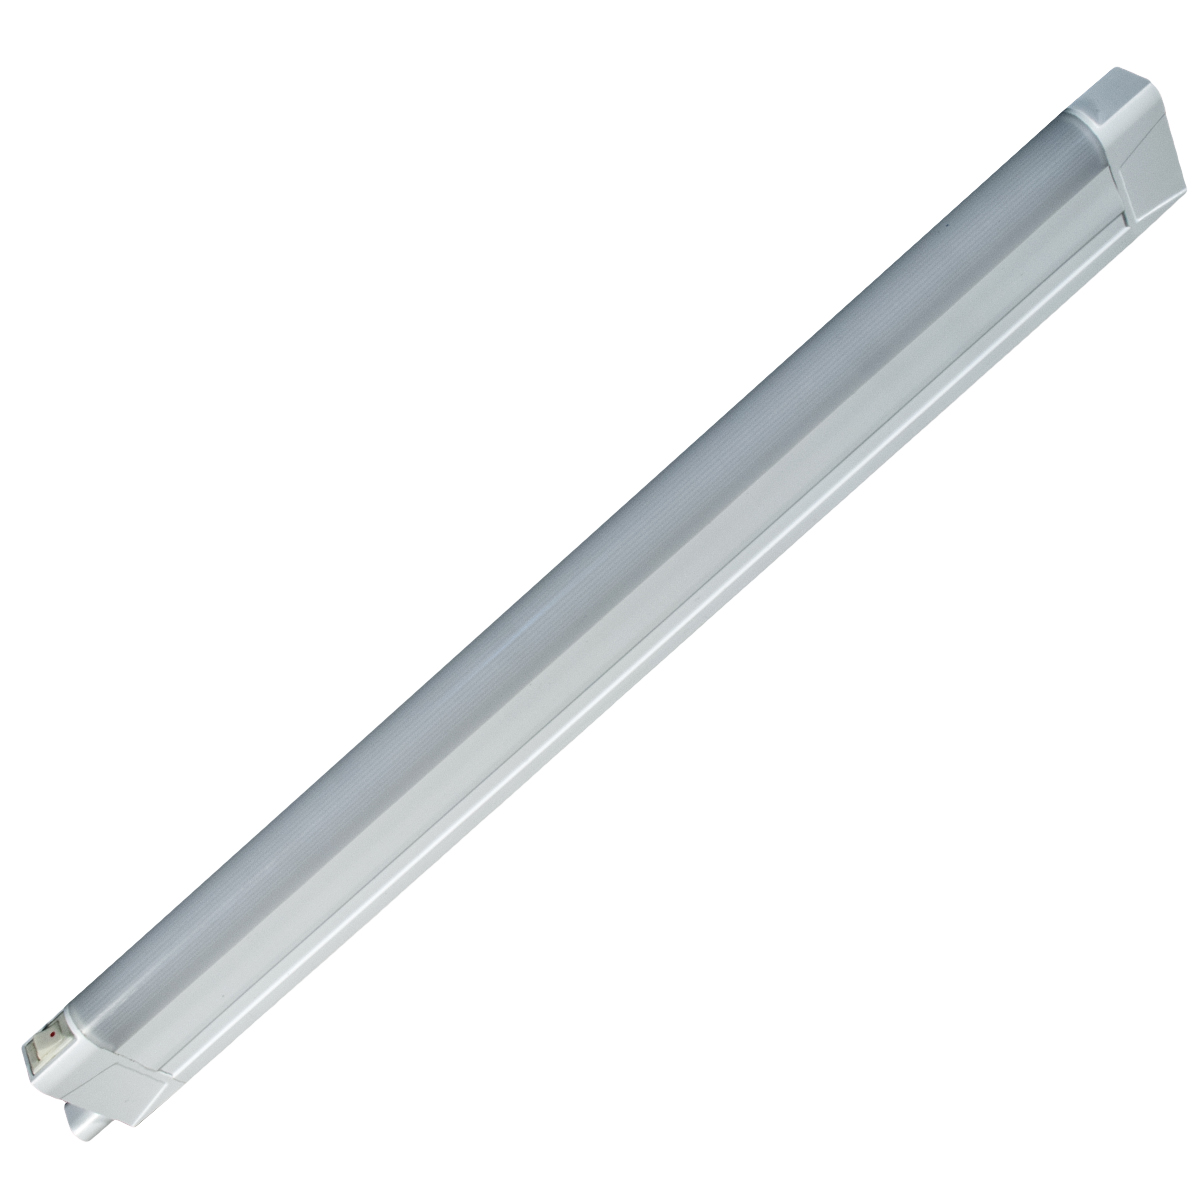 Линейный светодиодный светильник GLS LED Line 3, 4200К, 8 Вт, 519 мм светильник светодиодный luazon ск 077 usb 2 5 вт 8 диодов 200 лм 3000 к теплый белый